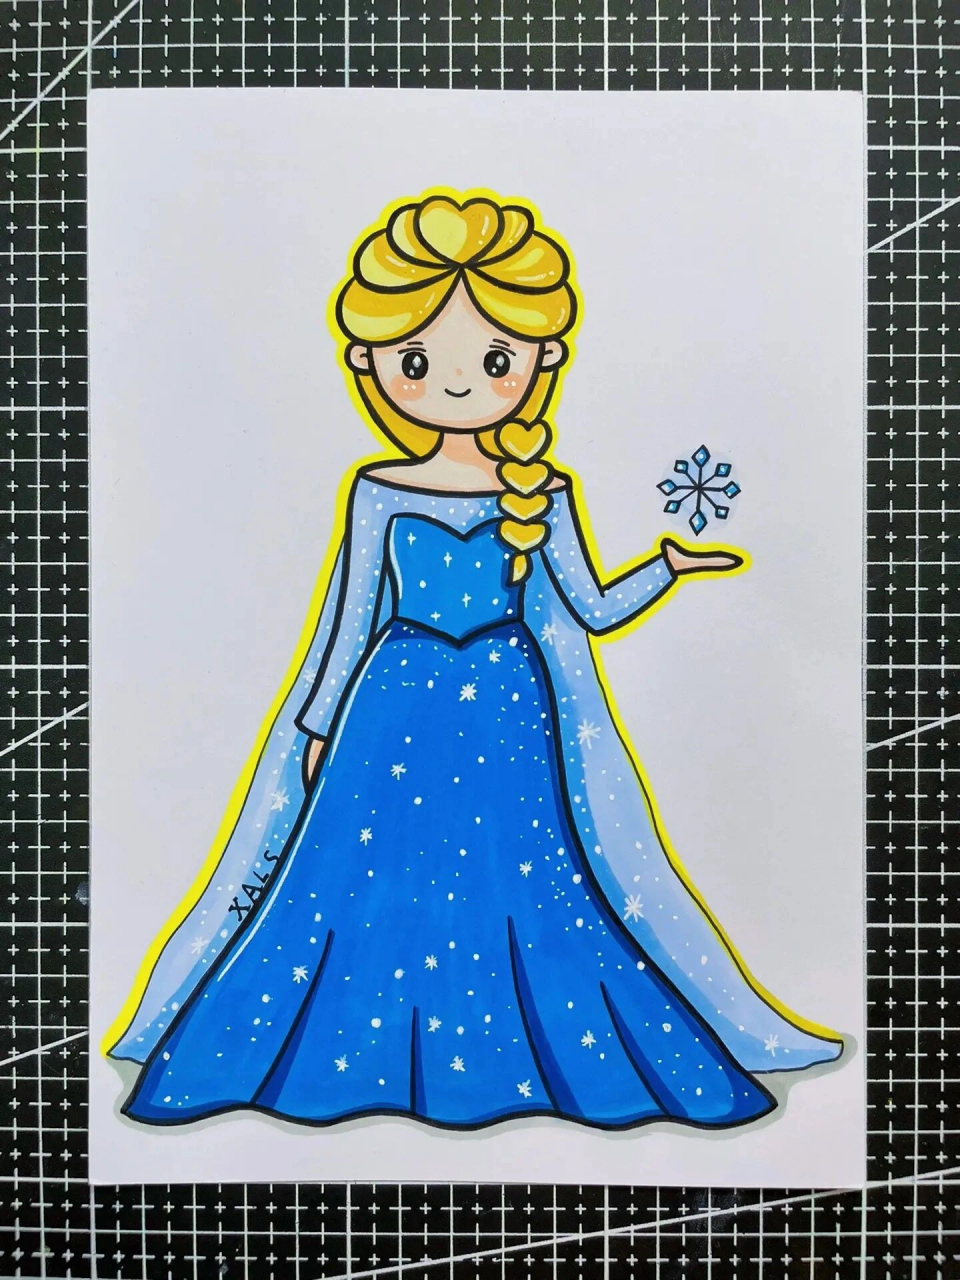 艾莎公主蛋糕简笔画图片